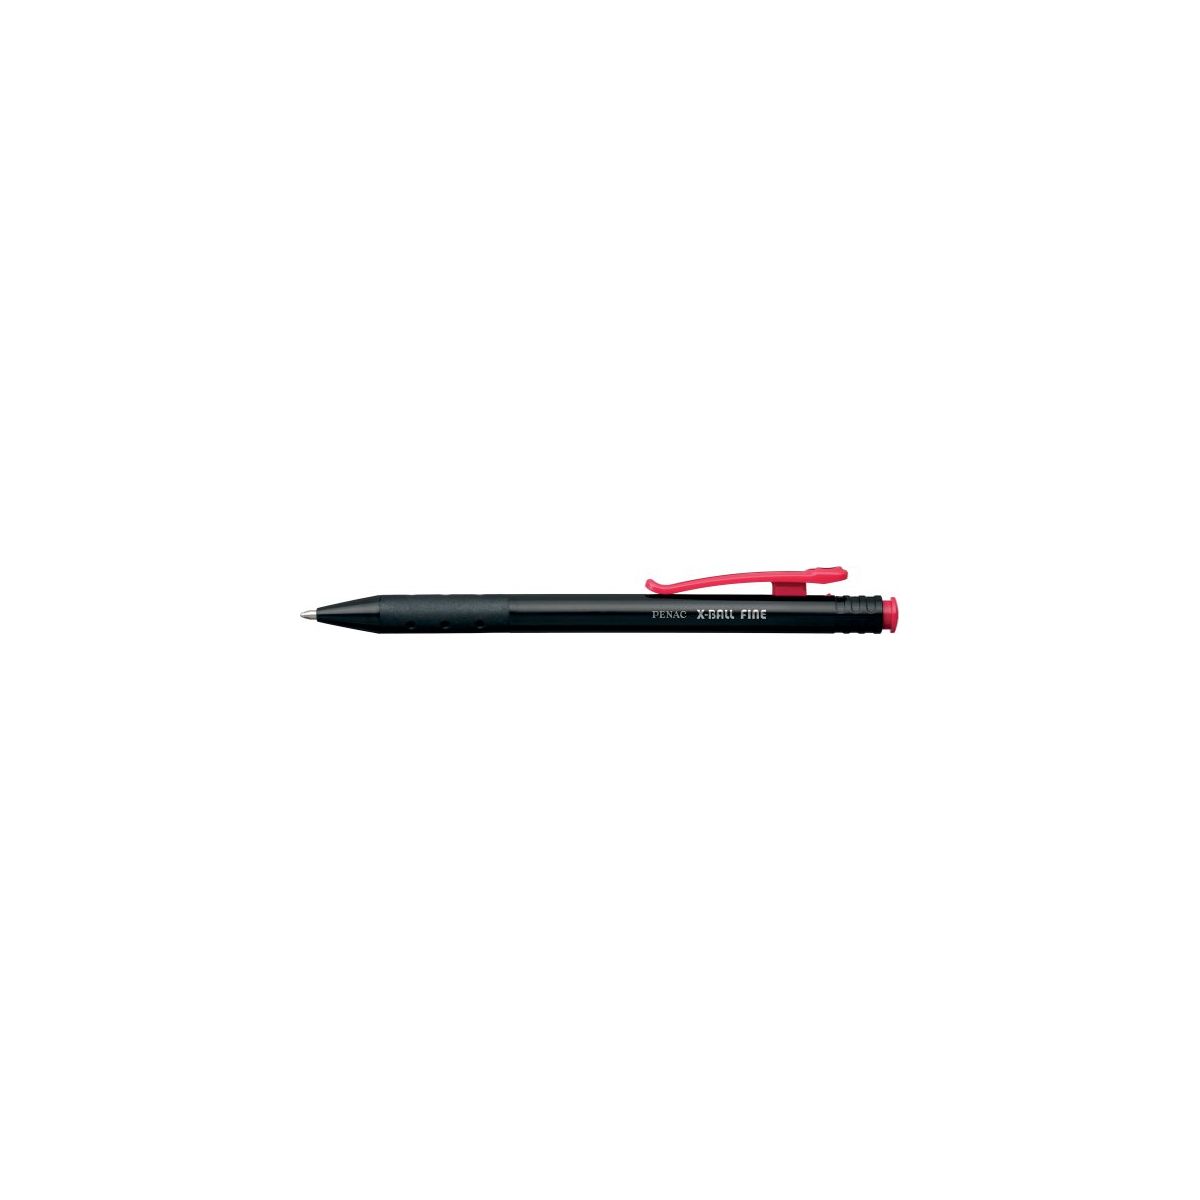 Długopis Penac x-ball fine czerwony (jba330102f-04)